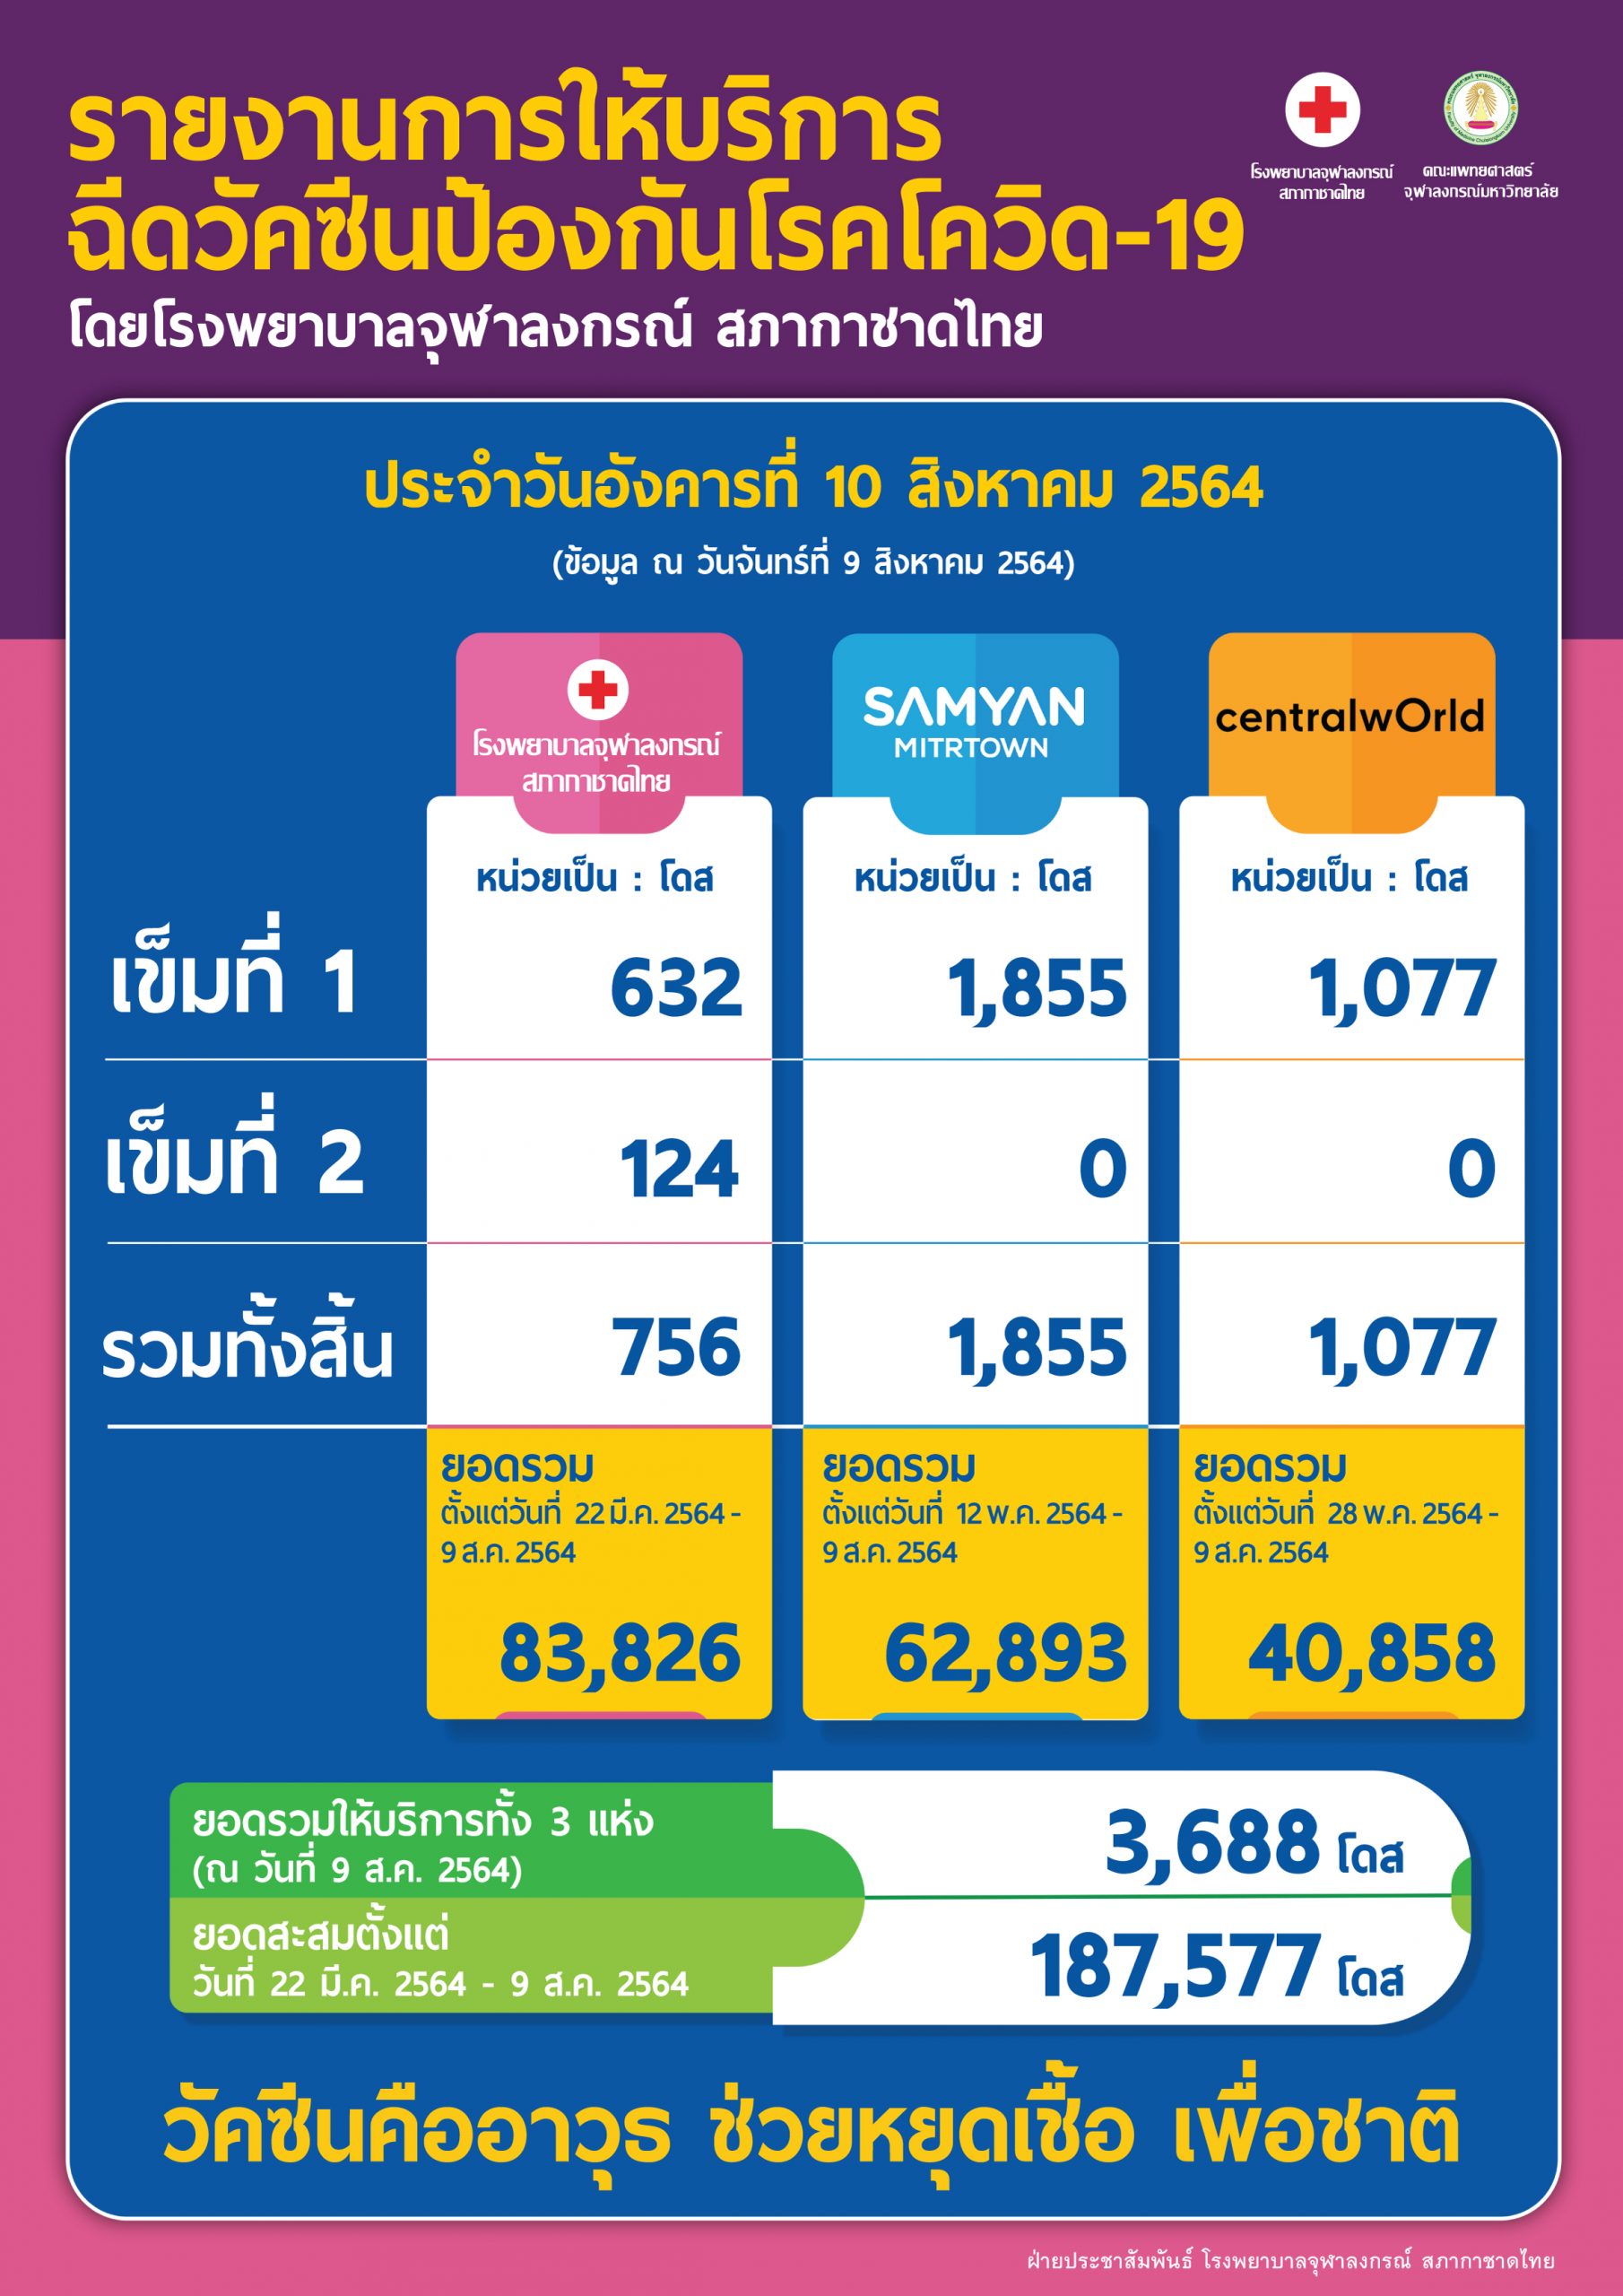 รายงานการให้บริการฉีดวัคซีนป้องกันโรคโควิด-19 โดยโรงพยาบาลจุฬาลงกรณ์ สภากาชาดไทย ประจำวันอังคารที่ 10 สิงหาคม 2564